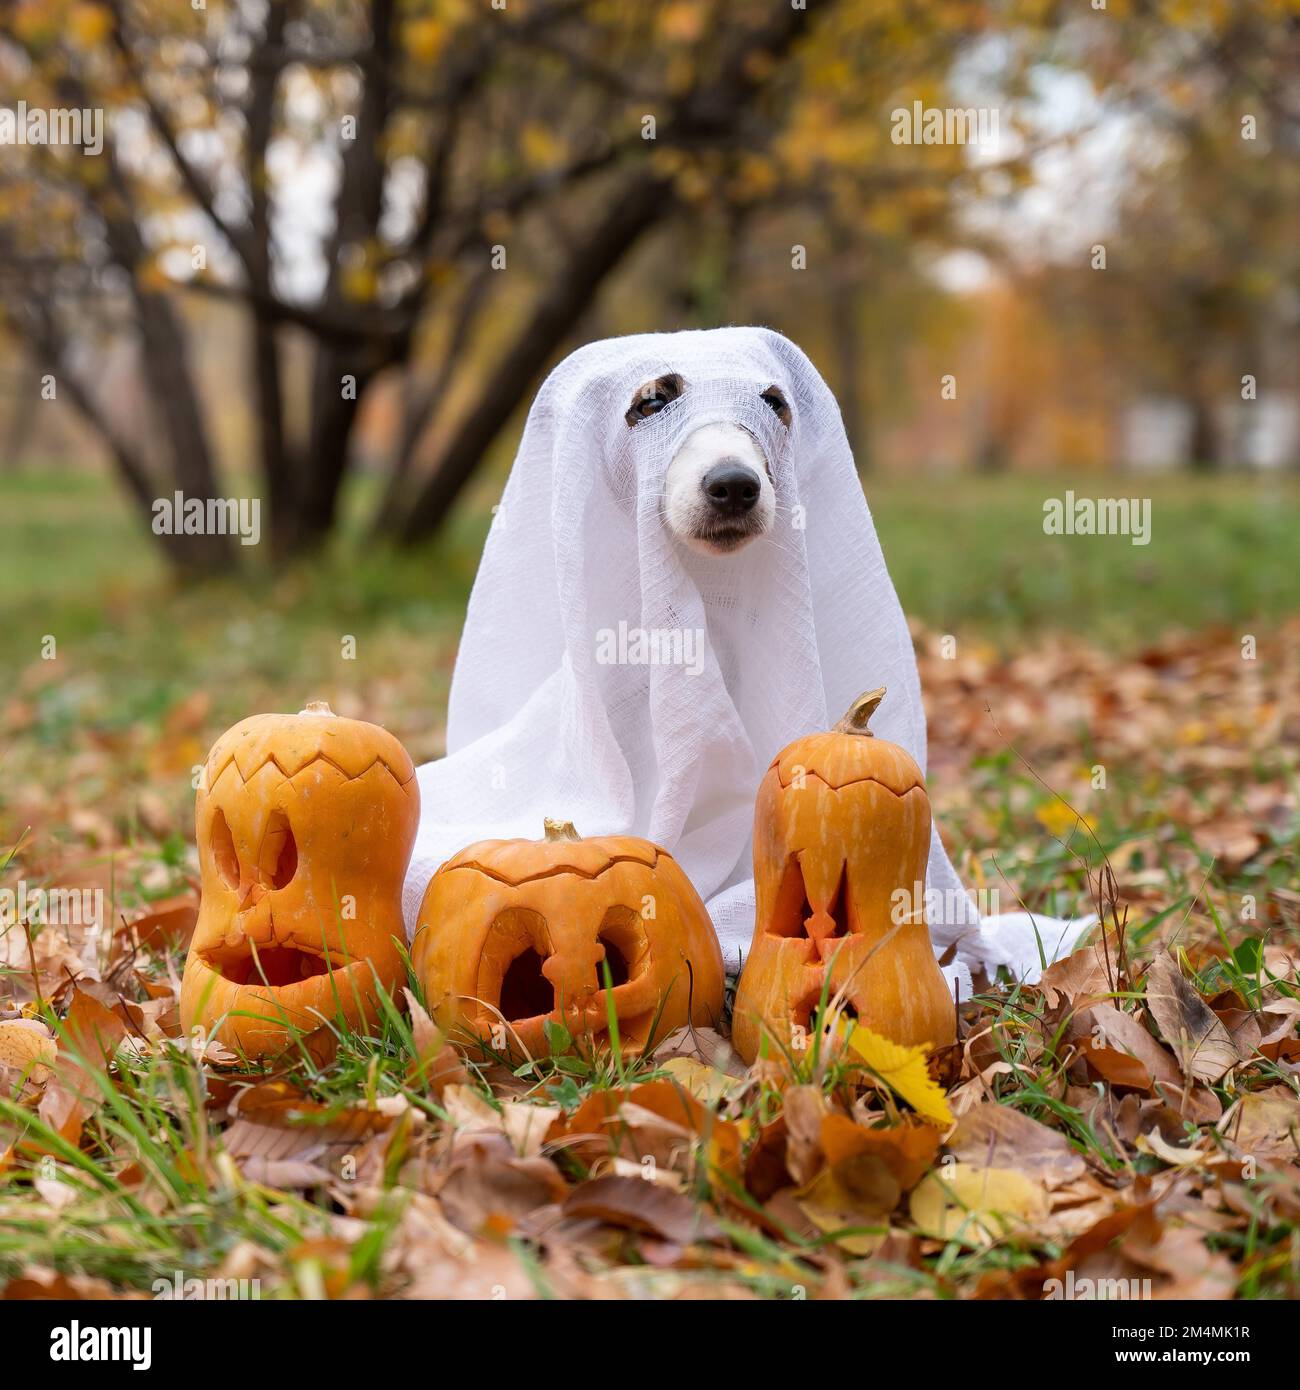 Hund Jack russell Terrier in einem Geisterkostüm mit Jack-o-Laternen Kürbissen im Herbstwald. Stockfoto